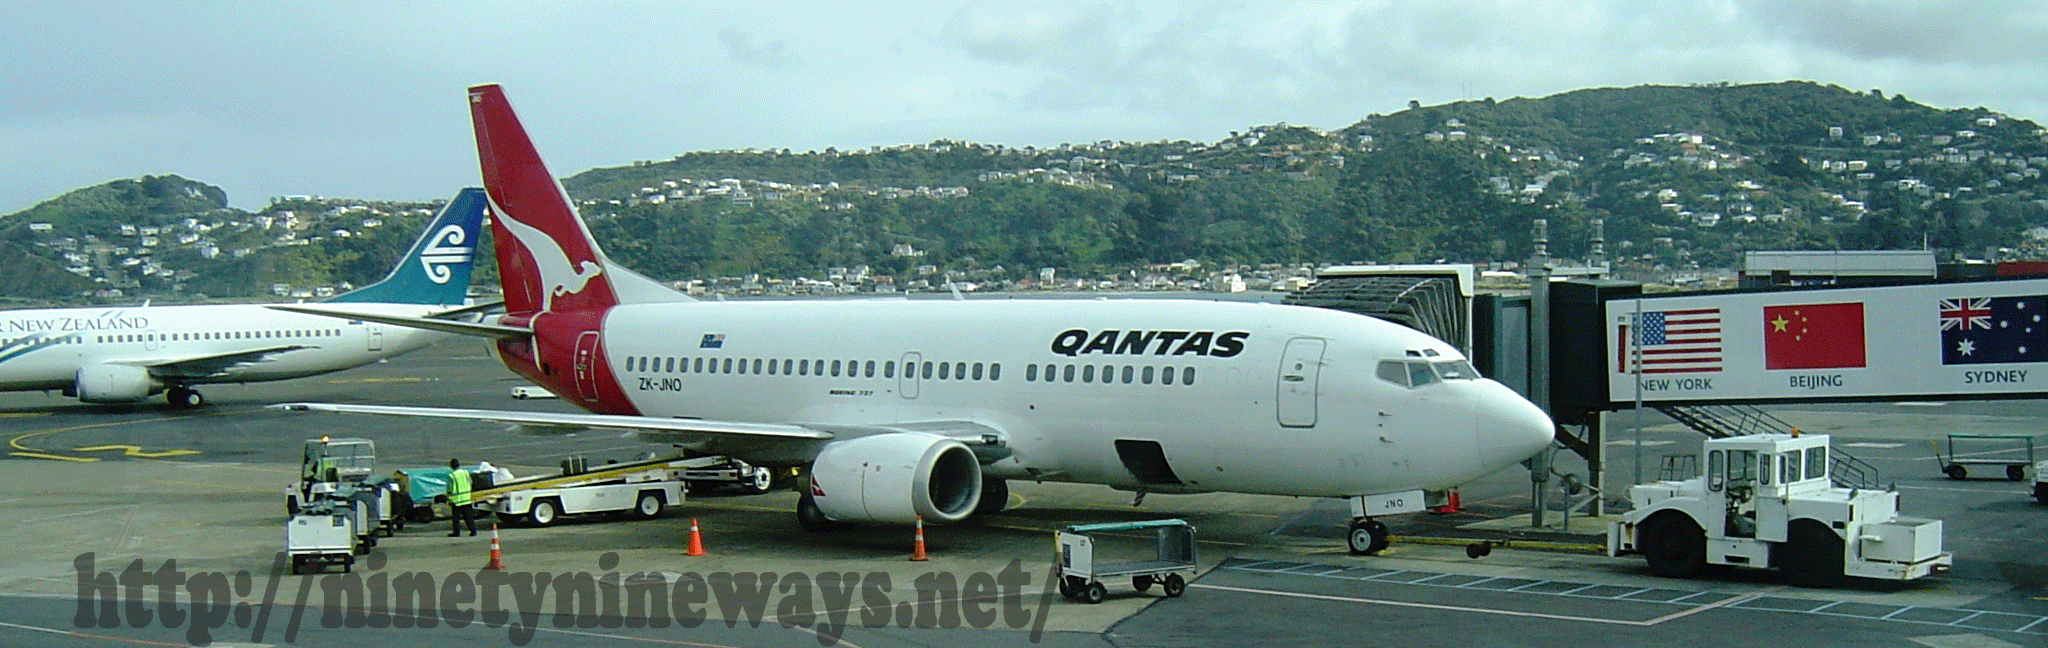 Air Qantas